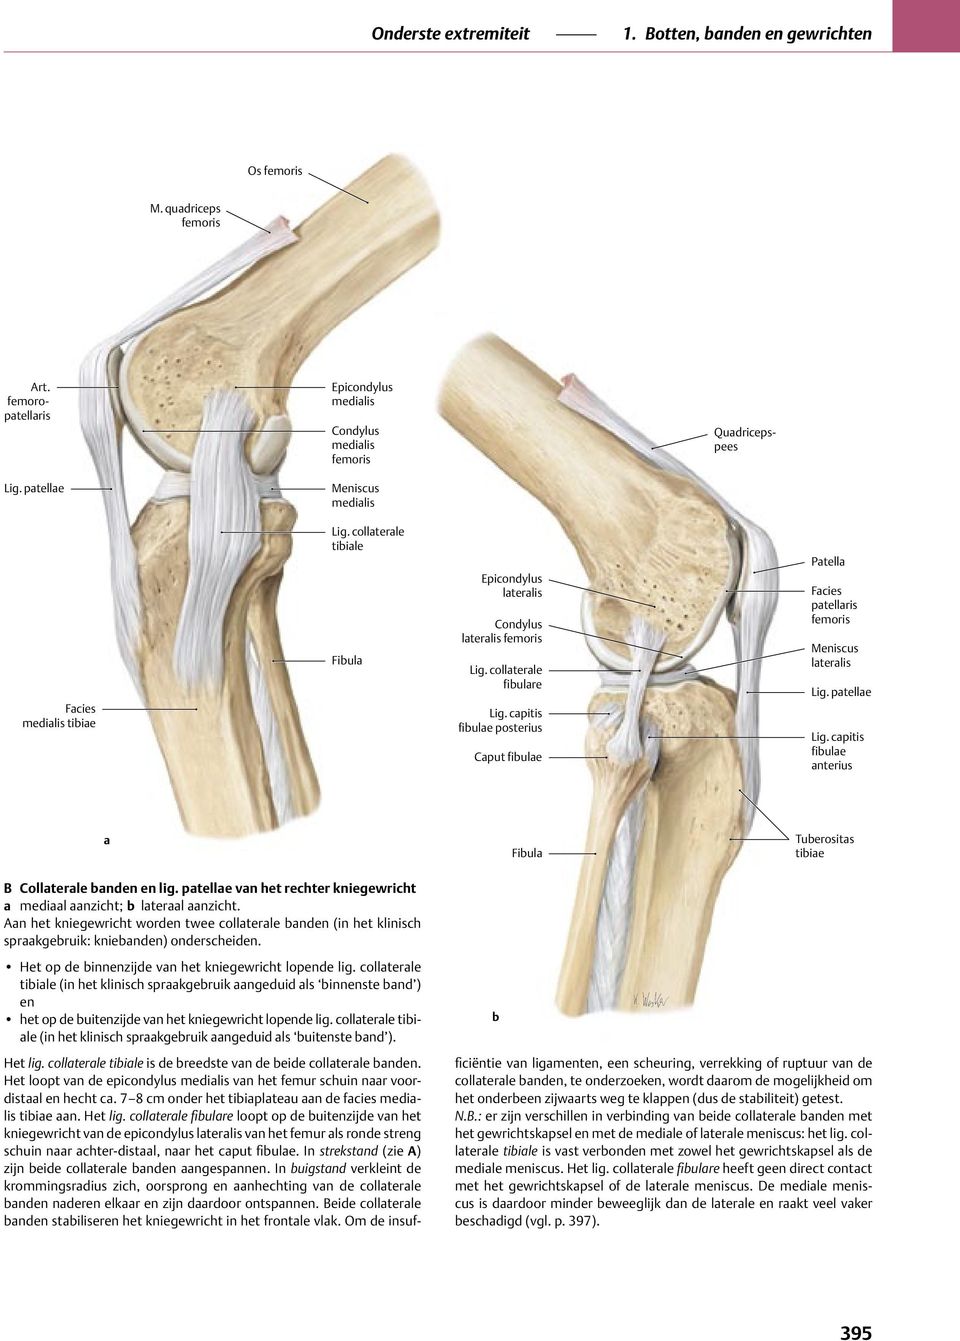 collaterale tibiale (in het klinisch spraakgebruik aangeduid als binnenste band ) en het op de buitenzijde van het kniegewricht lopende lig.